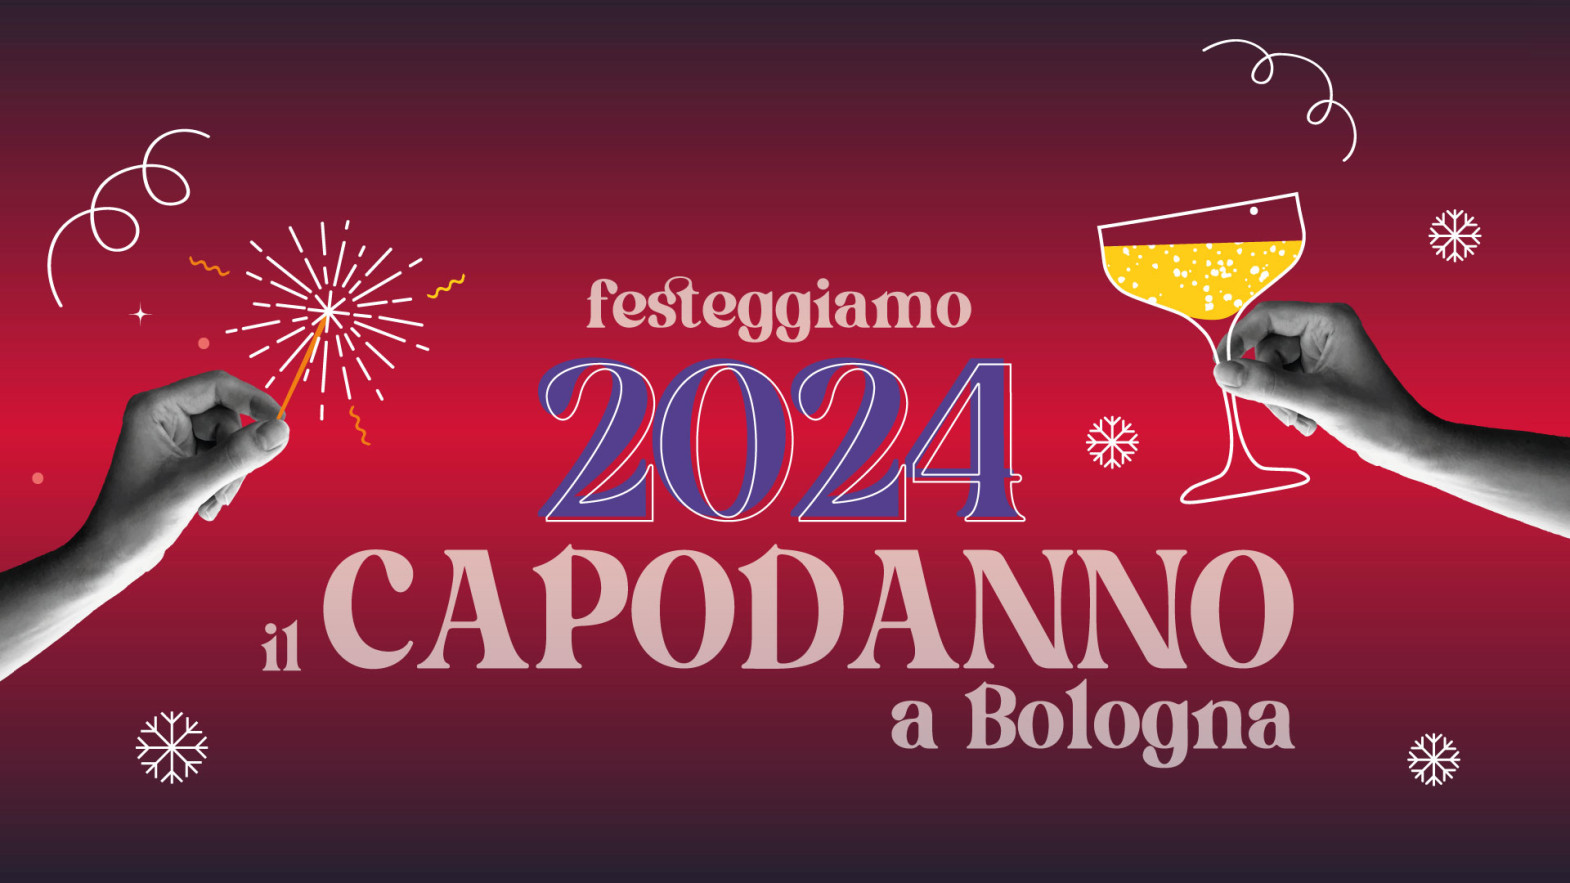 Capodanno 2024 a Bologna: vieni a FICO!